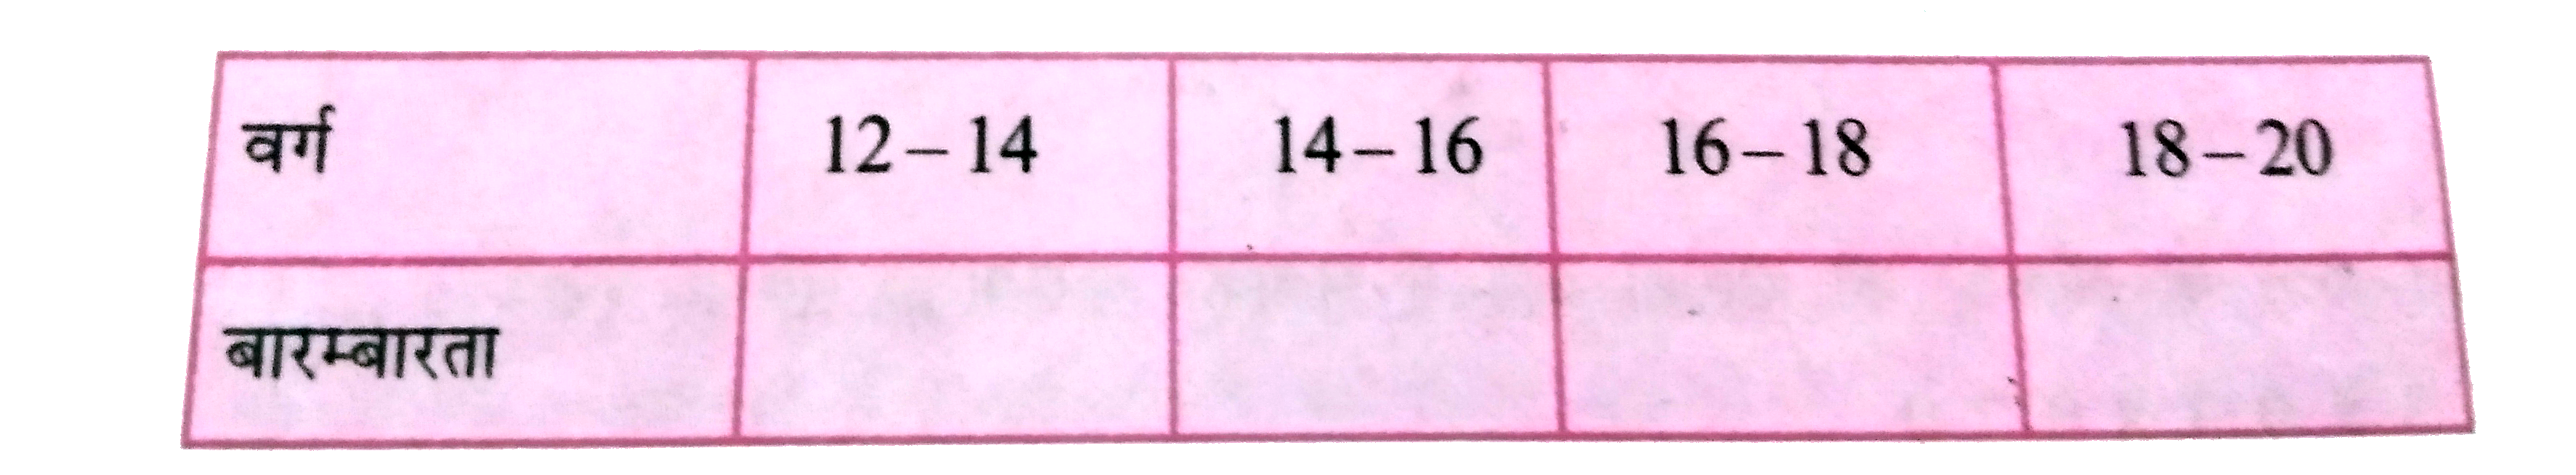 निम्नलिखित आँकड़ों से वर्गों की बारंबारताएँ दी हुई सारणी में भरें :   12, 14, 13, 12, 14, 15, 13, 12, 14, 13, 14, 15, 13, 16, 17, 12, 13, 14, 18, 19.